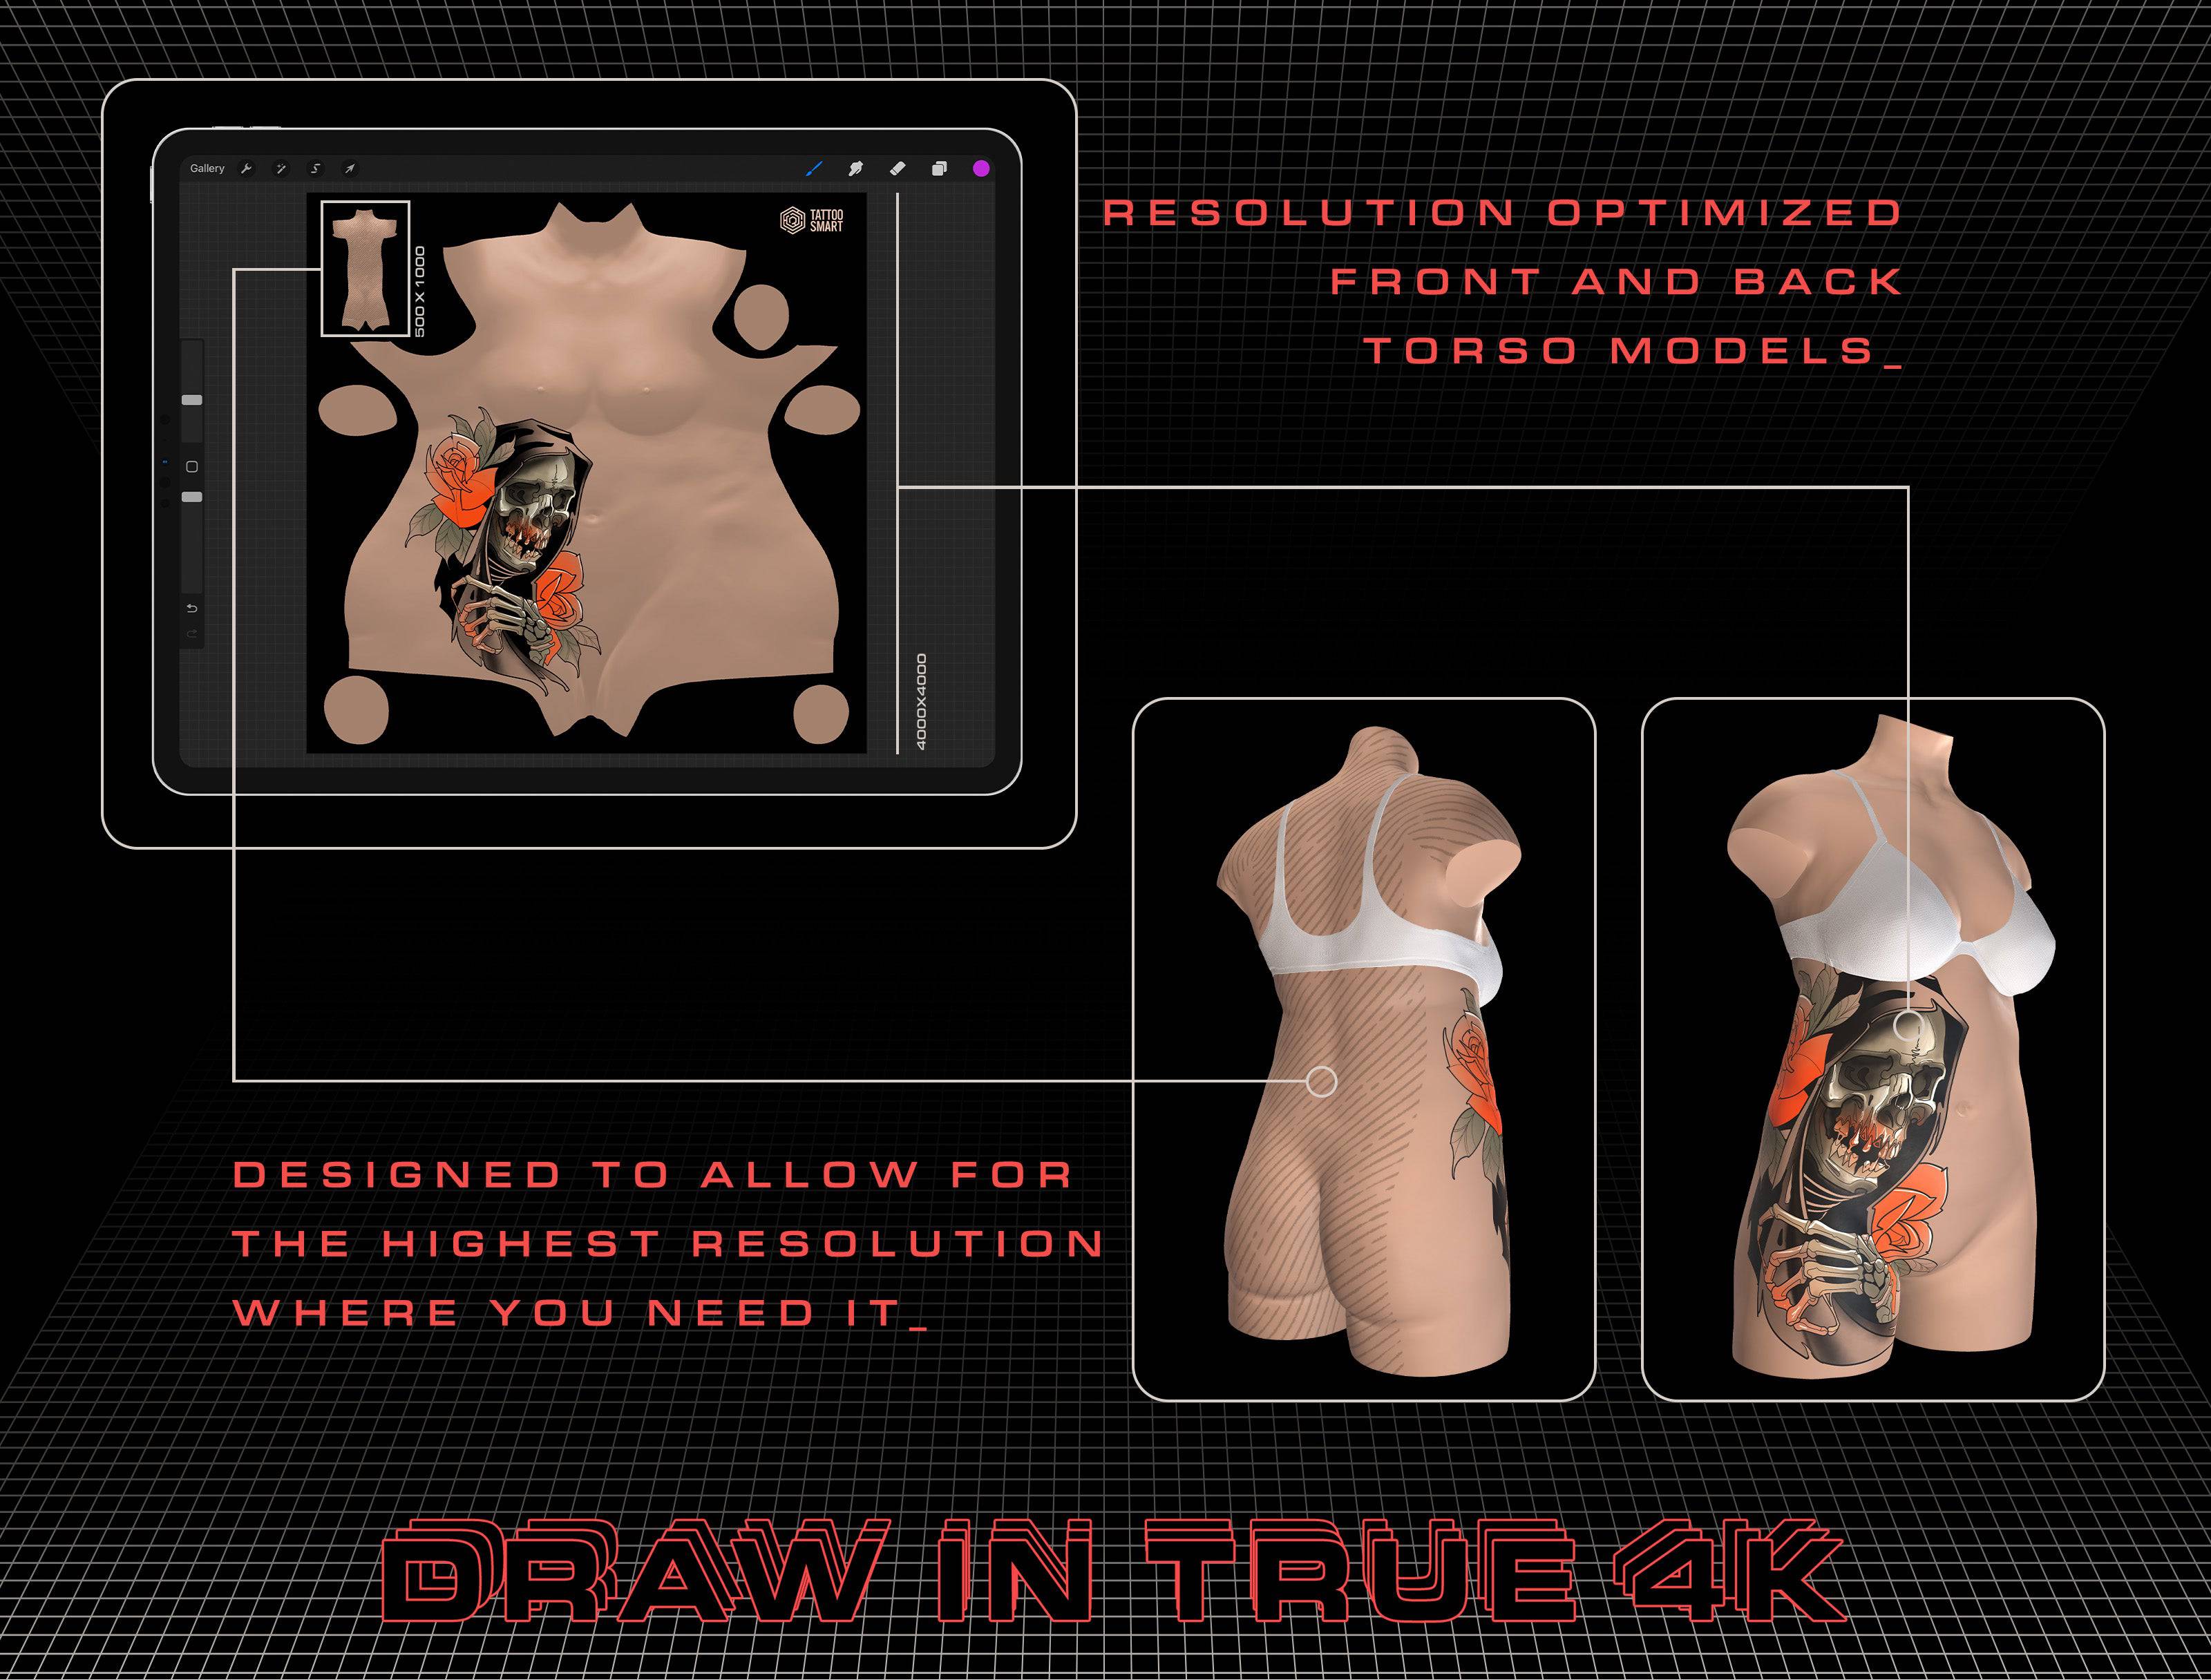 3D Model - Model Humans: Advanced 3D Body Parts - Tattoo Smart